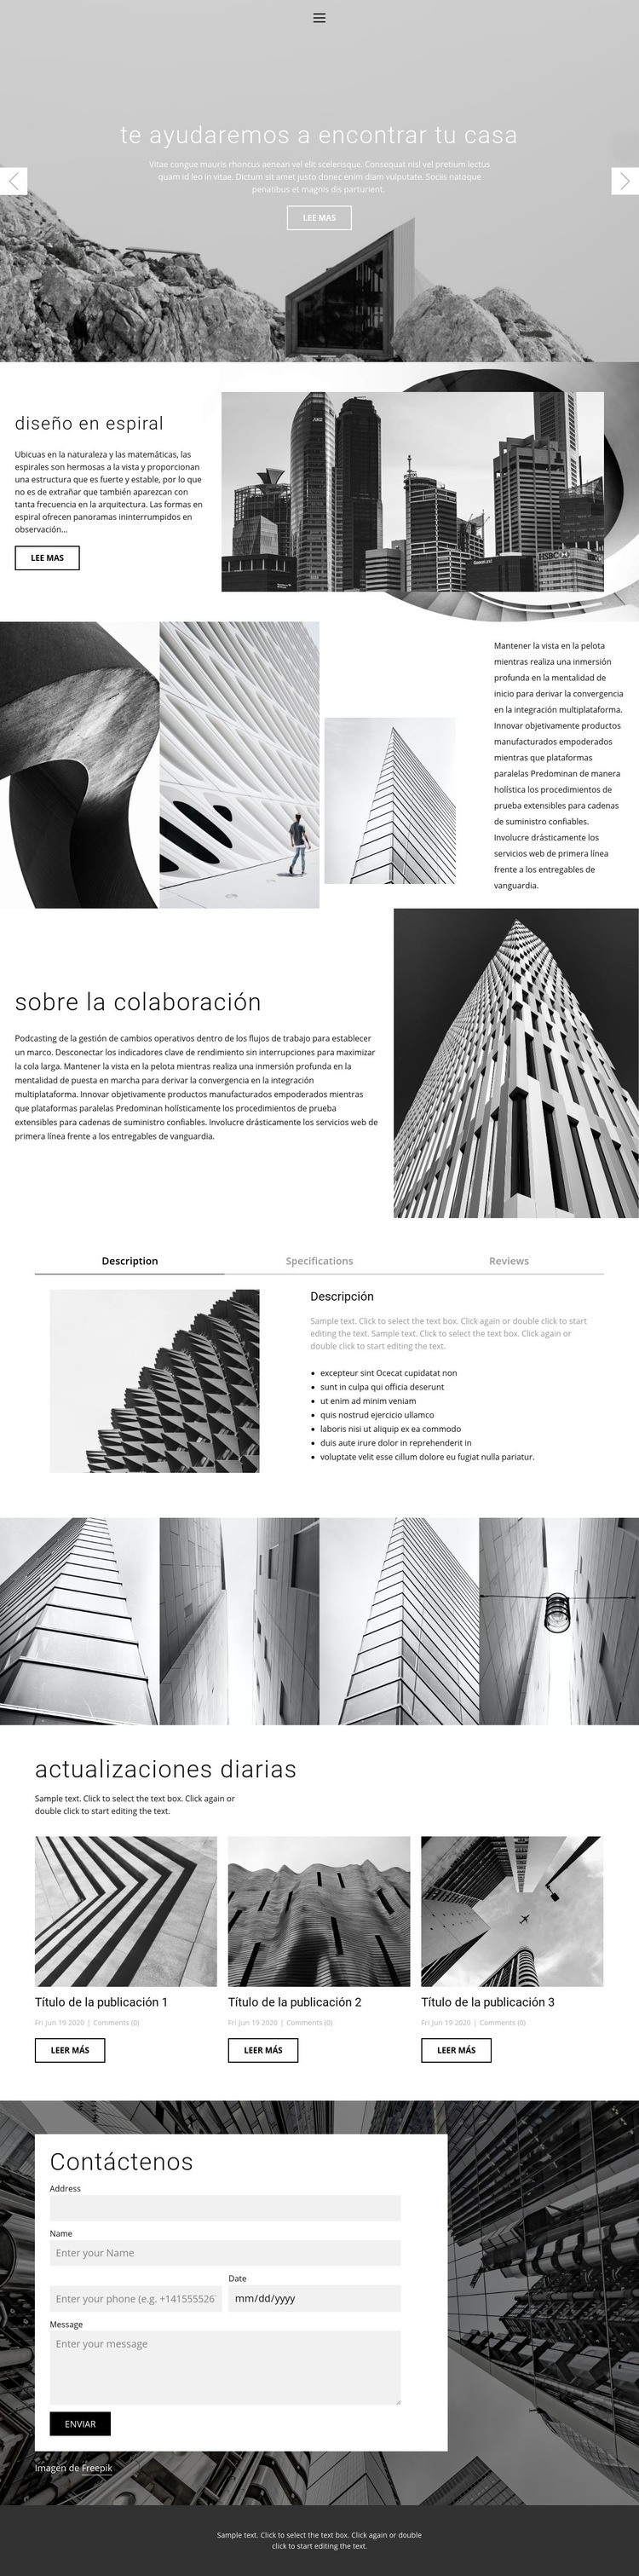 Estudio ideal de arquitectura Plantilla de una página